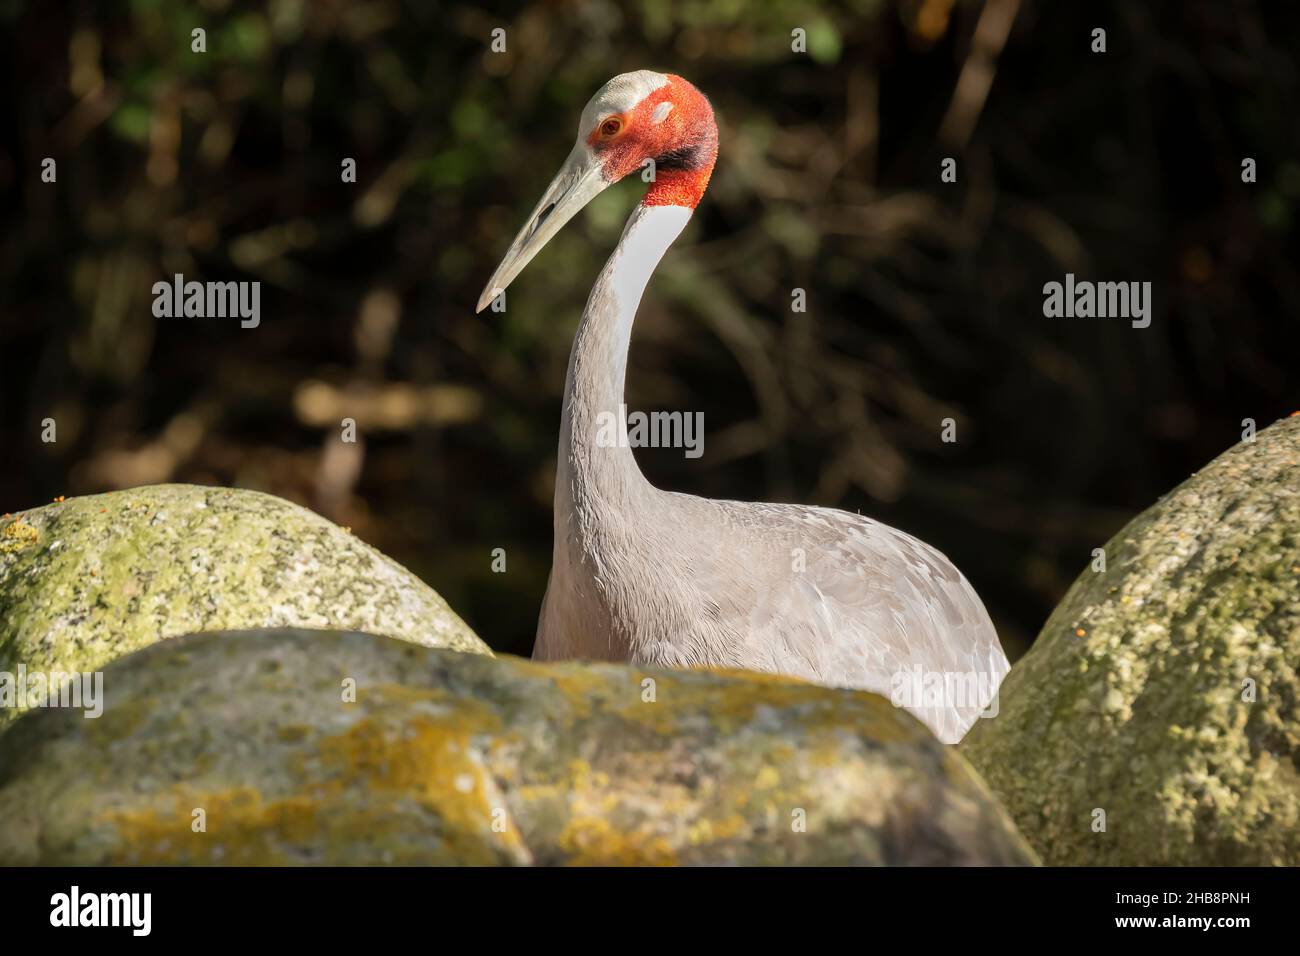 Primo piano di una gru a corona rossa Grus japonensis alias gru manchuriana o uccello gru giapponese foraging in acqua e un prato in erba in giorno di sole. Foto Stock